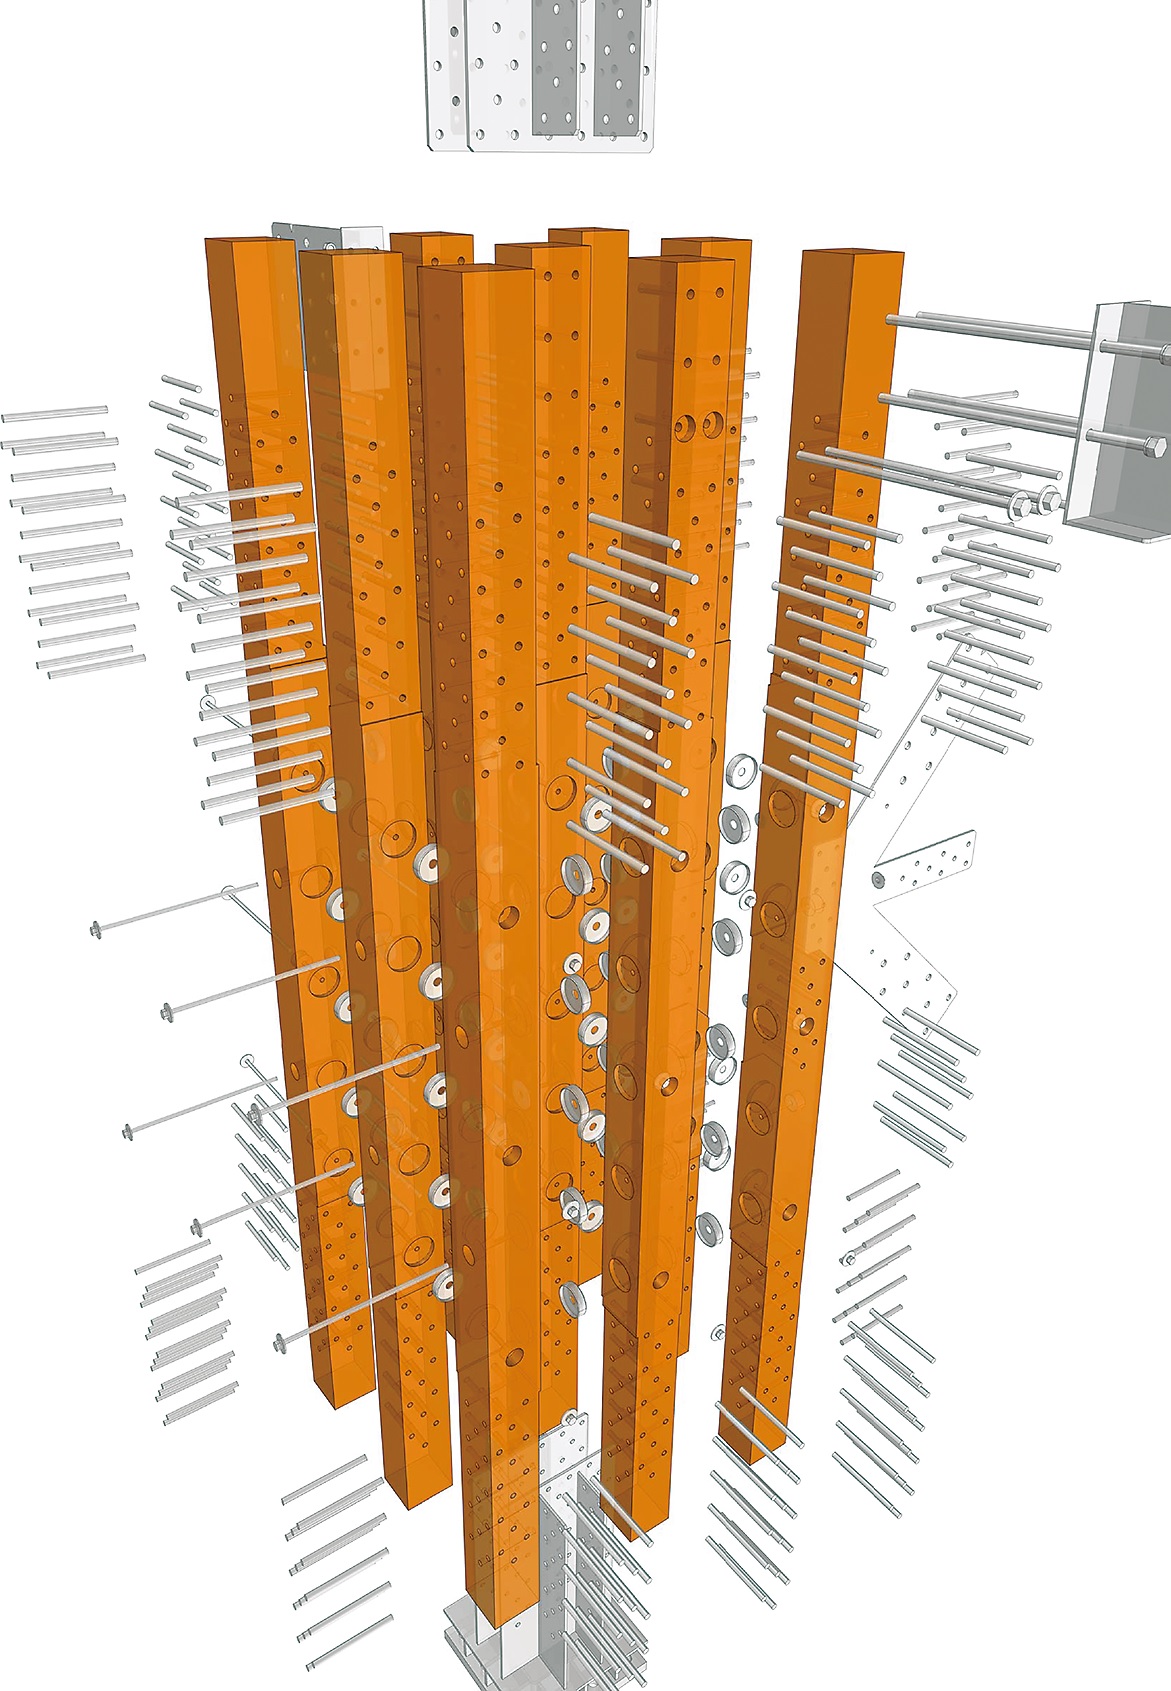 国内初の7階建て 純木造ビル を徹底解剖 束ね柱で脱炭素の旗手に 日経クロステック Xtech